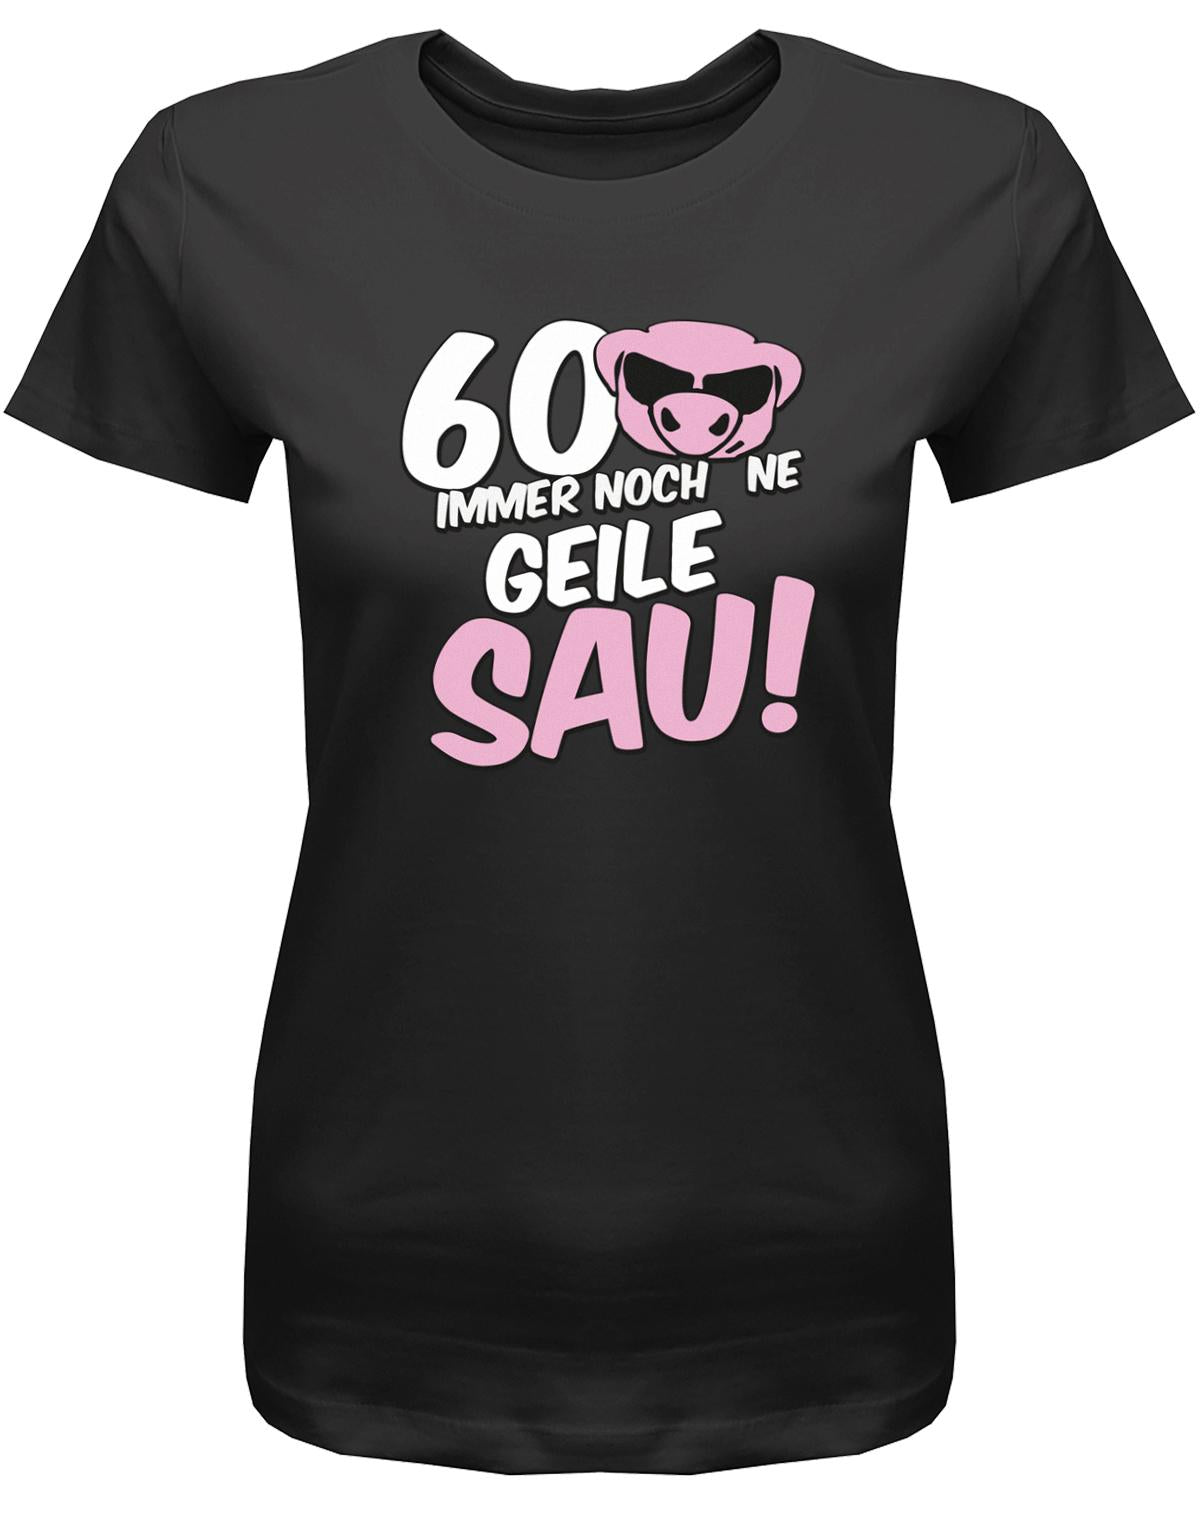 Lustiges T-Shirt zum 60 Geburtstag für die Frau Bedruckt mit 60 Immer noch 'ne geile Sau! Sau mit Sonnenbrille Schwarz